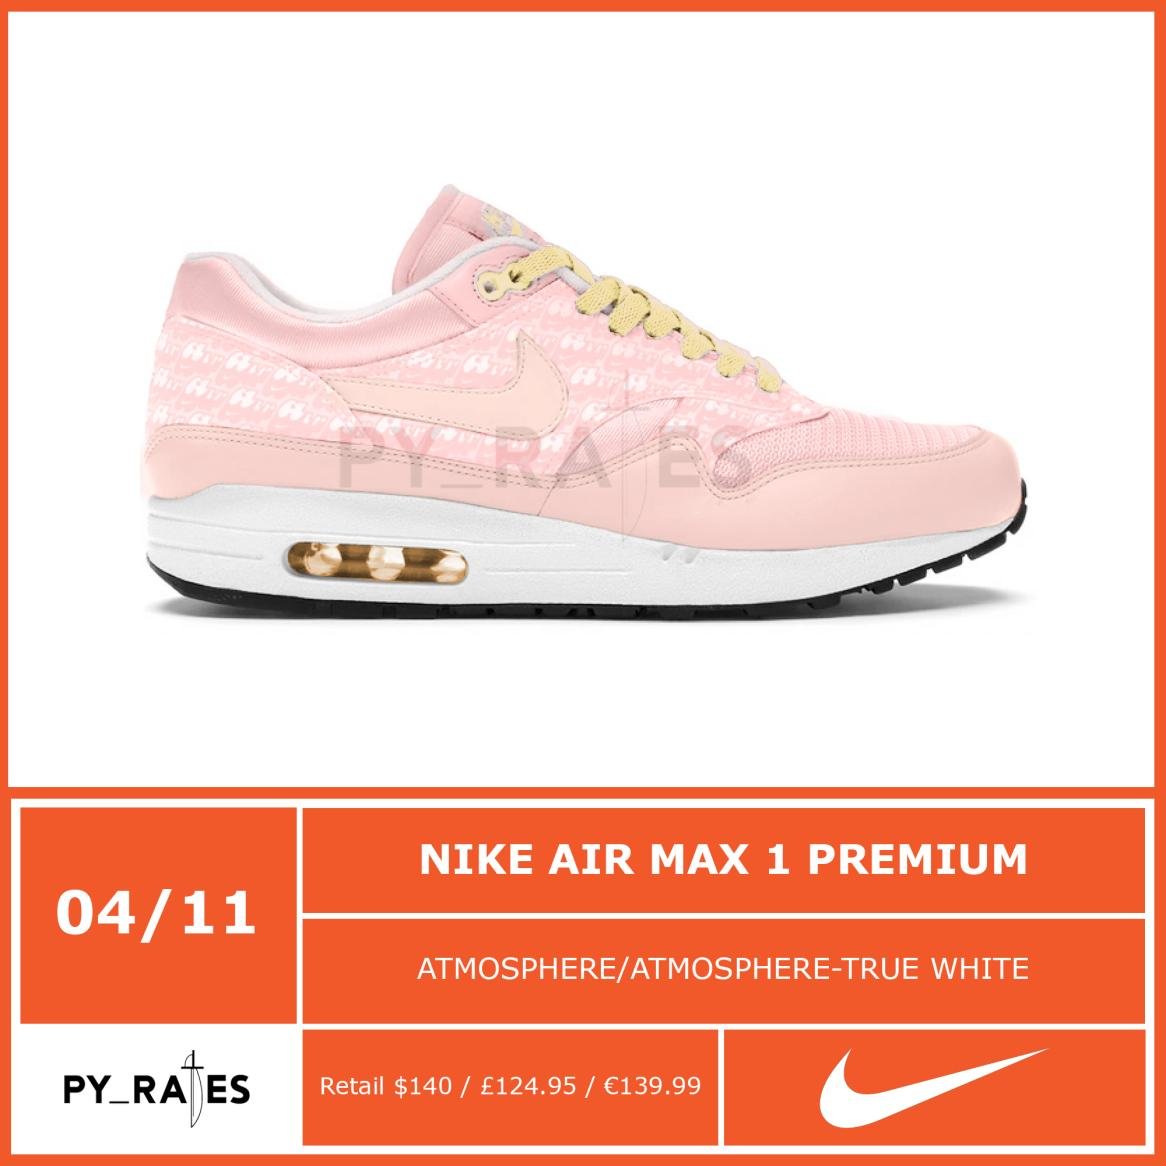 Nike Air Max 1 Powerwall Pink Lemonade 